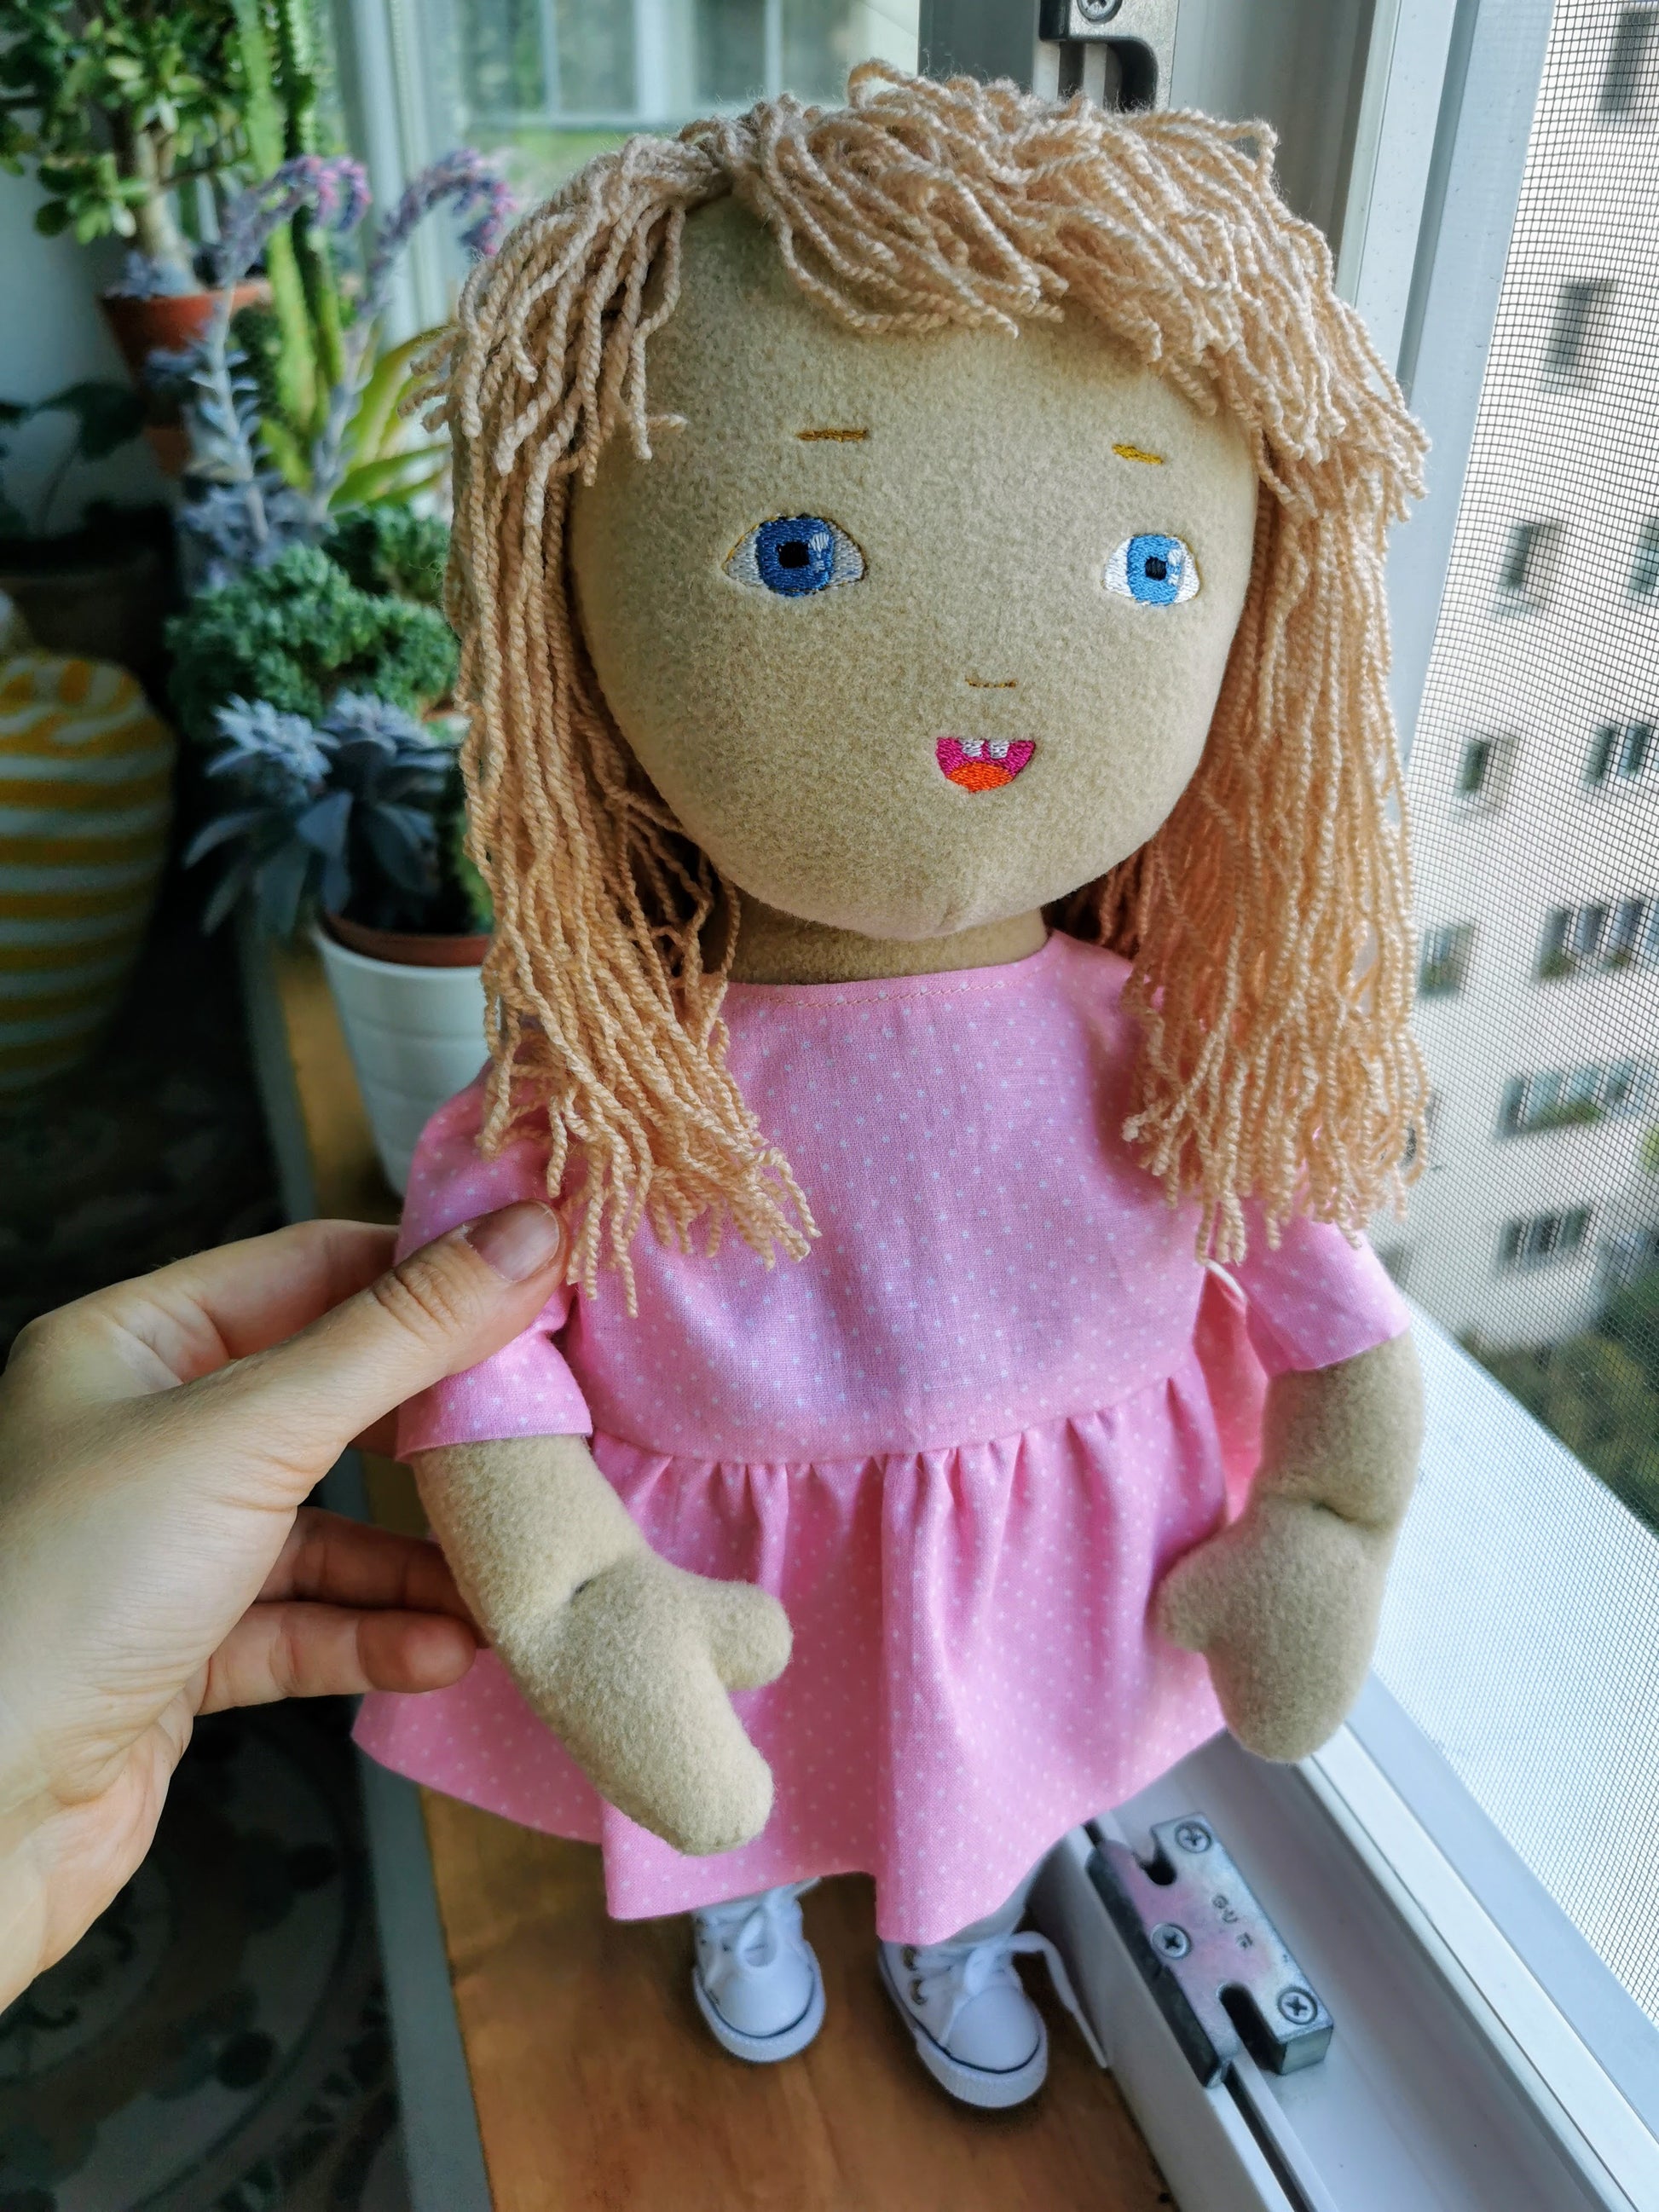 RONIAVL Jeffy Puppet Soft Stuffed Plush Toy Hand Maroc